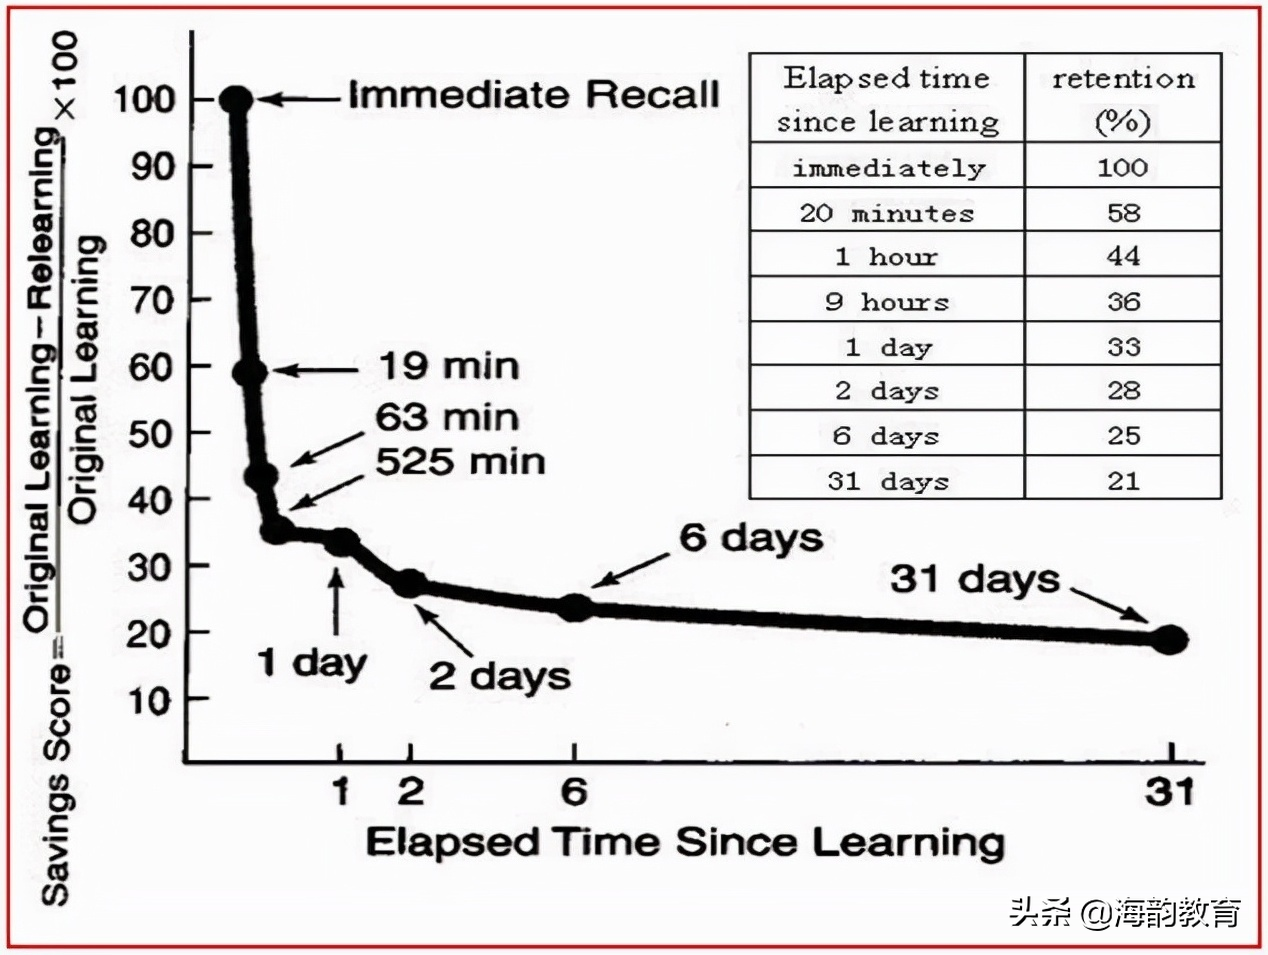 海韵教育丨如何运用艾宾浩斯遗忘曲线，提高学习和记忆效率？